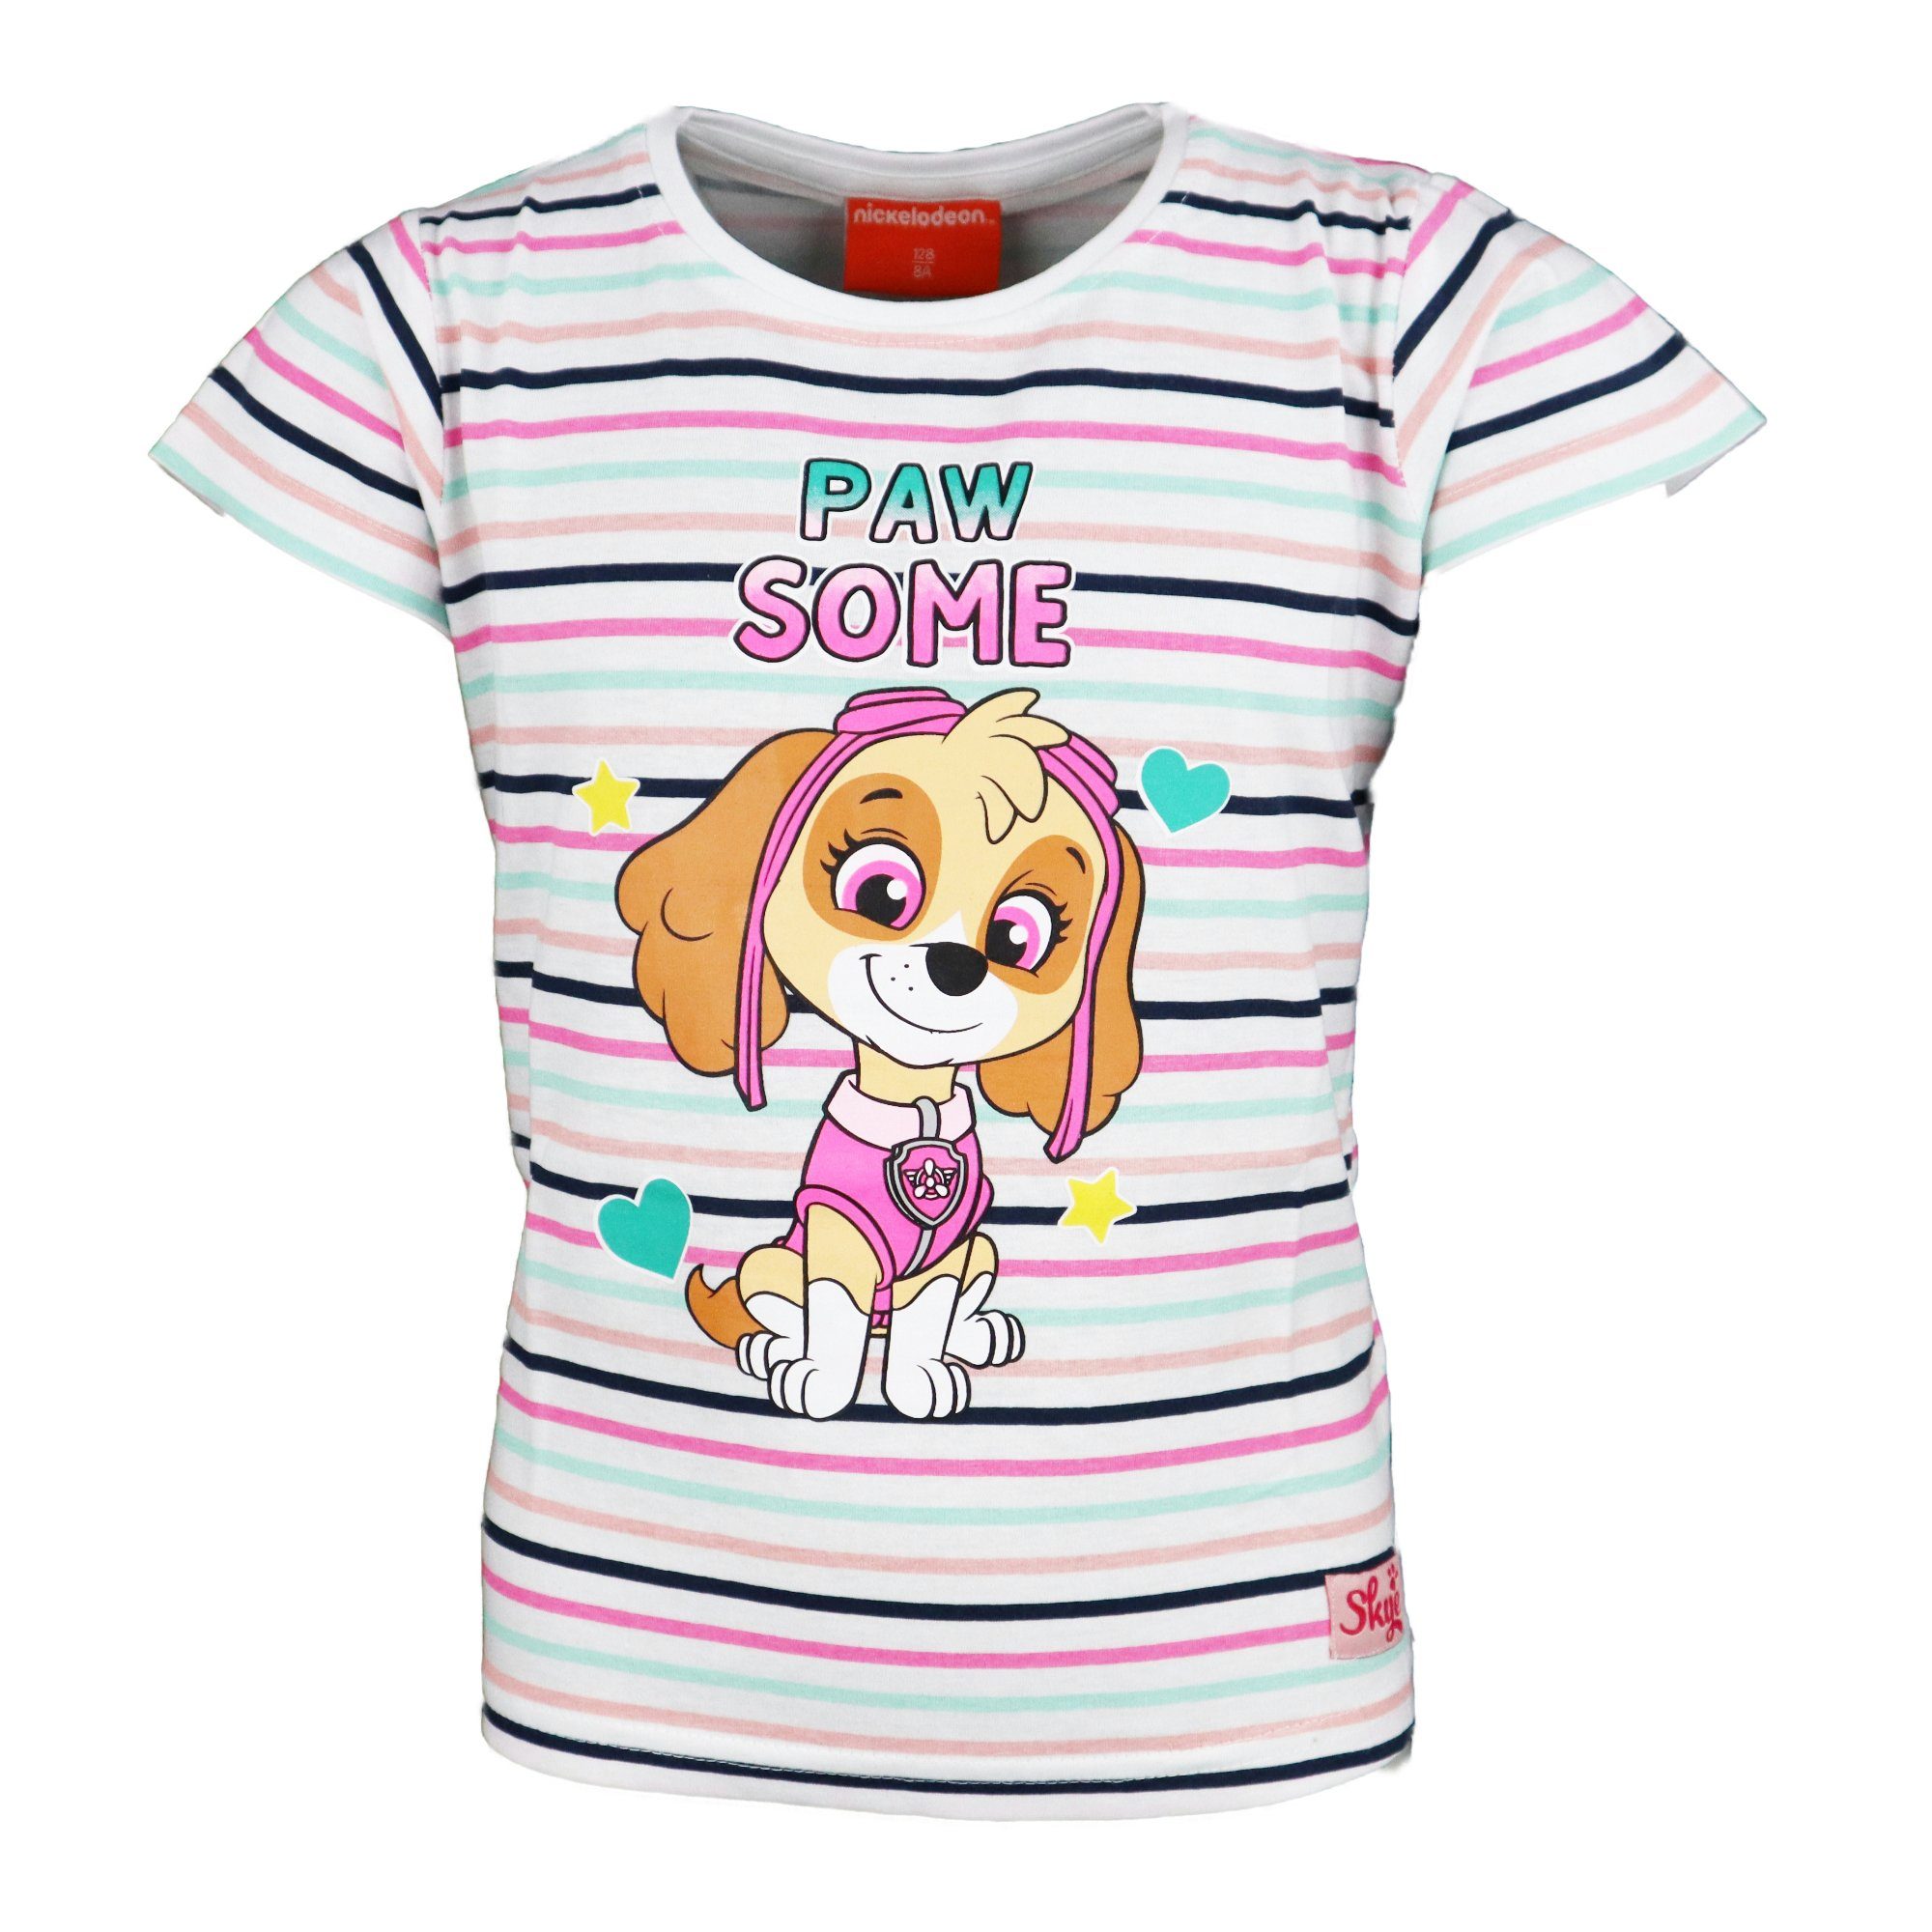 bis T-Shirt Mädchen Baumwolle Print-Shirt 98 128, PATROL Kinder PAW Skye 100% Gr.